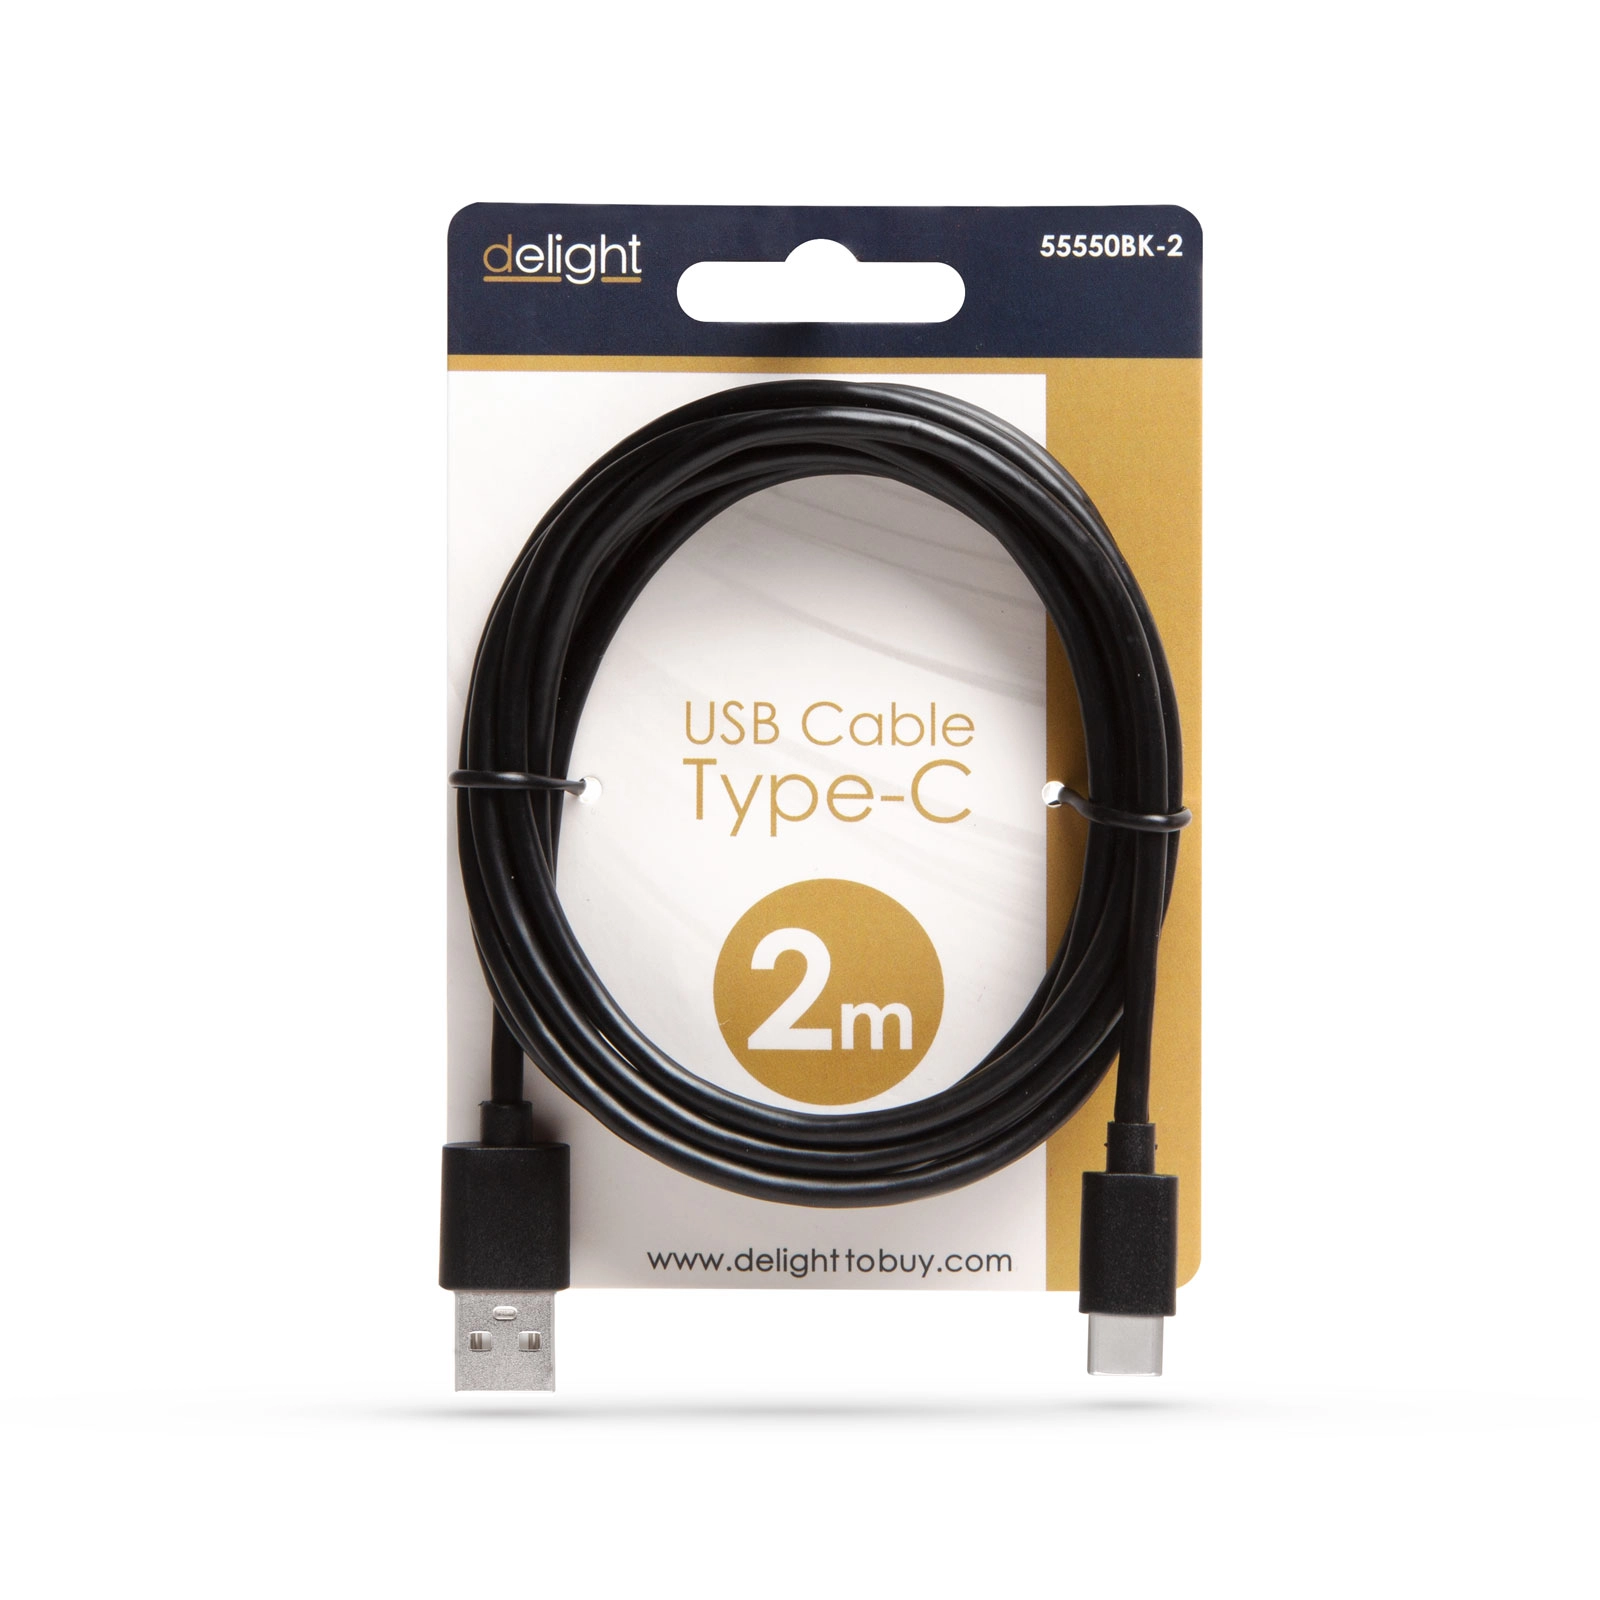 Adatkábel – USB Type-C – fekete – 2 m (töltőkábel)